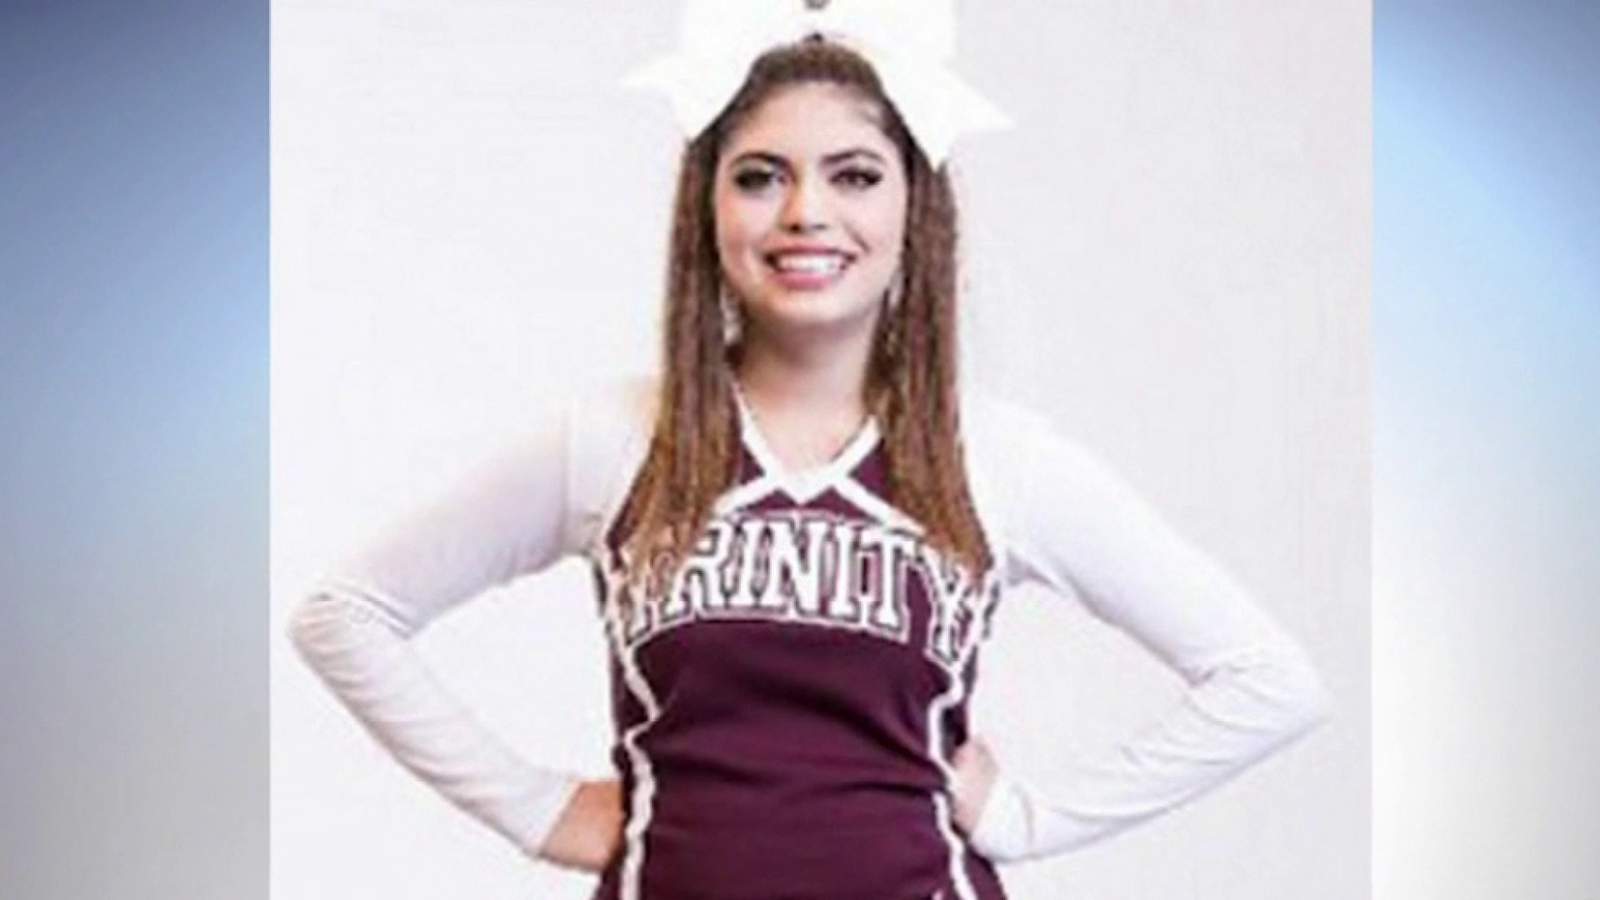 Murder trial begins in 2017 death of Trinity University cheerleader